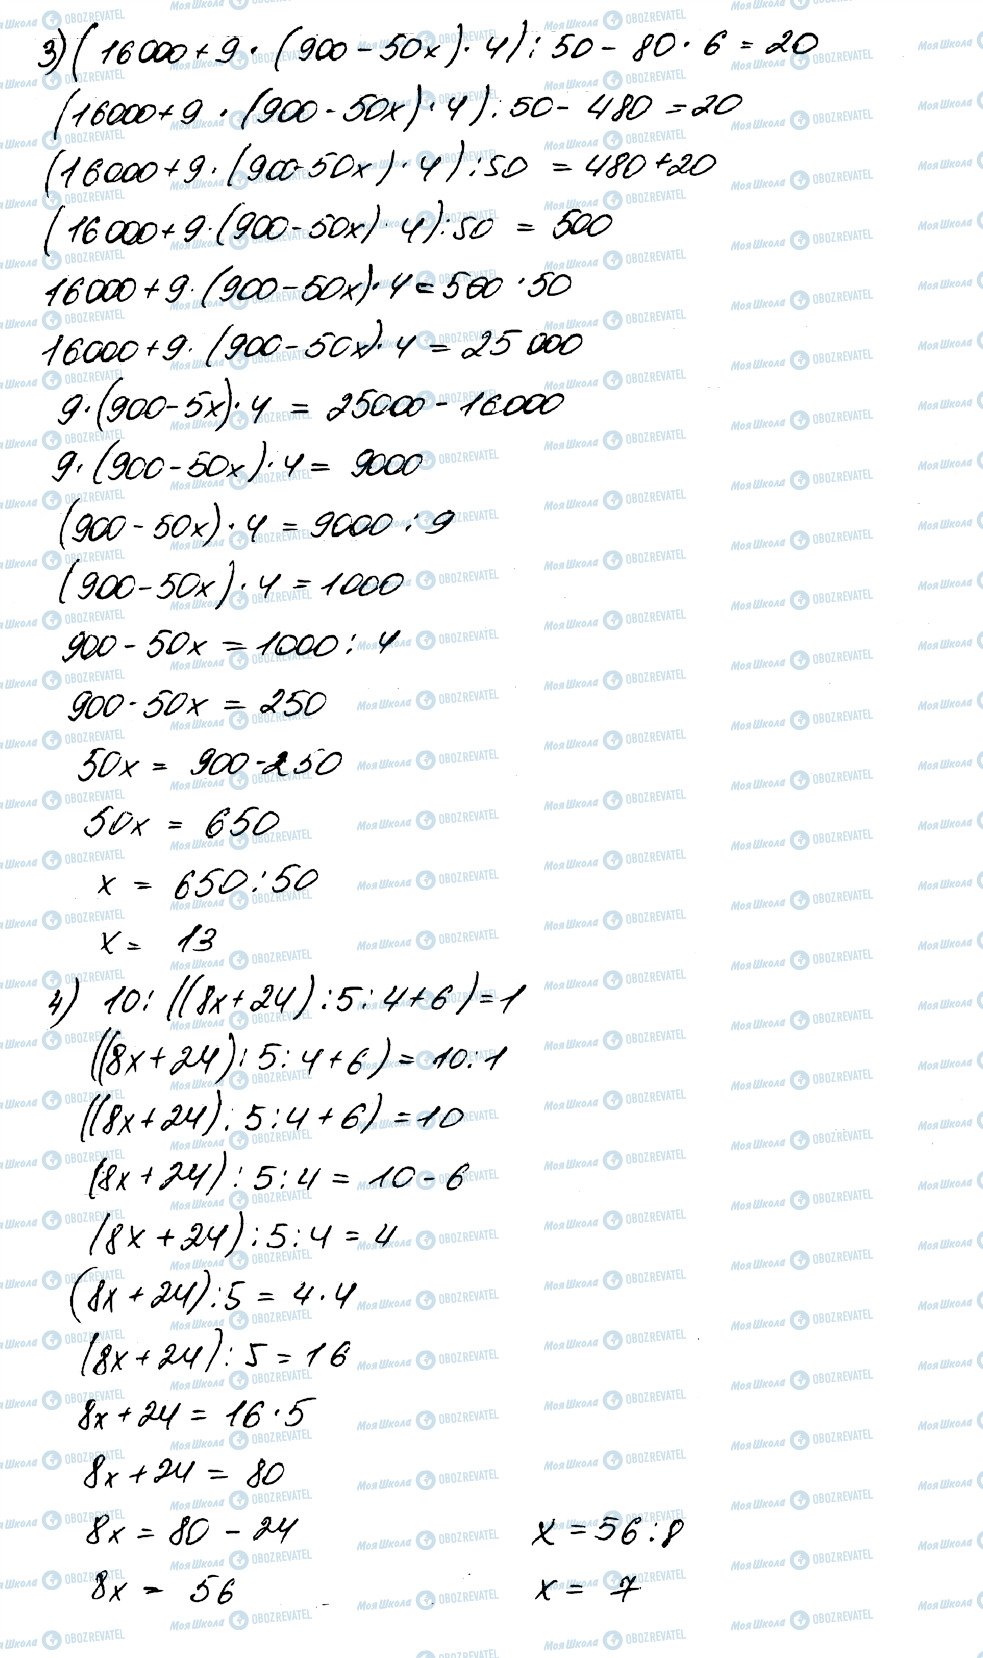 ГДЗ Математика 5 класс страница 578